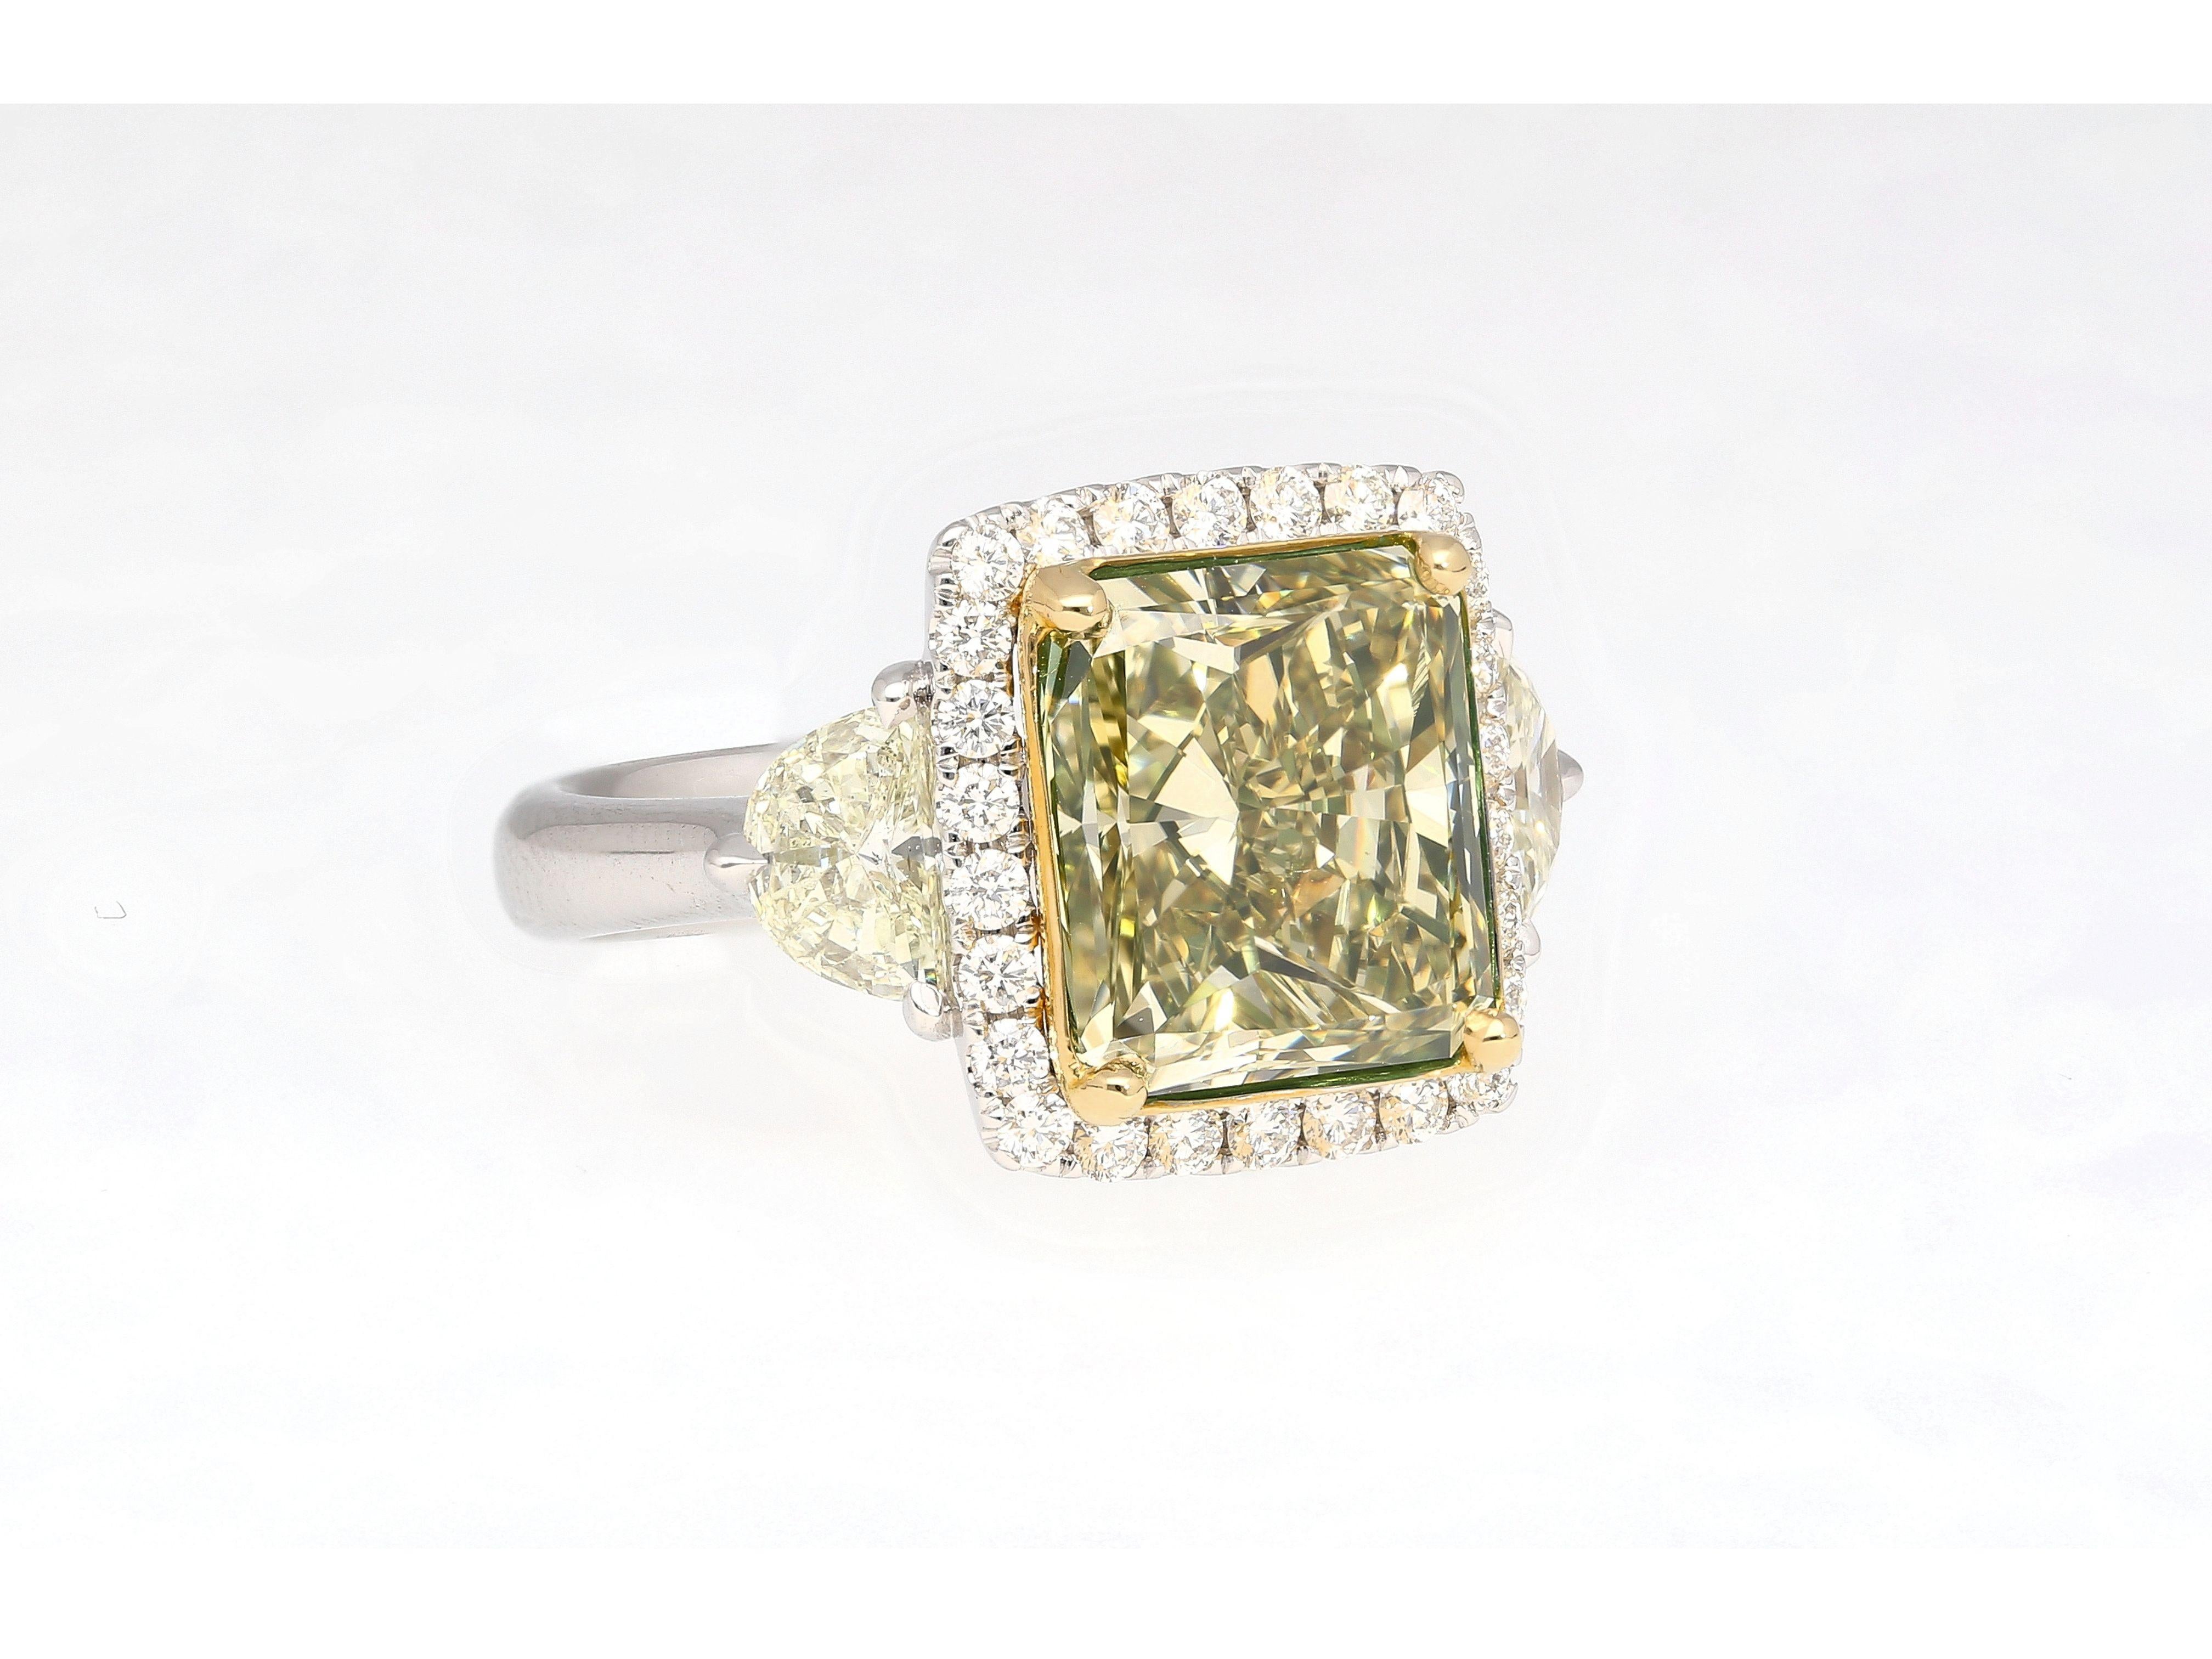 GIA-zertifizierter 6,07-Karat-Diamantenverlobungsring mit bräunlich-grünlich-gelbem Strahlenschliff. Fassung aus 18 Karat Weiß- und Gelbgold. Der Ring verfügt über einen Halo aus weißen Diamanten mit rundem Brillantschliff, einen mit Pflastersteinen